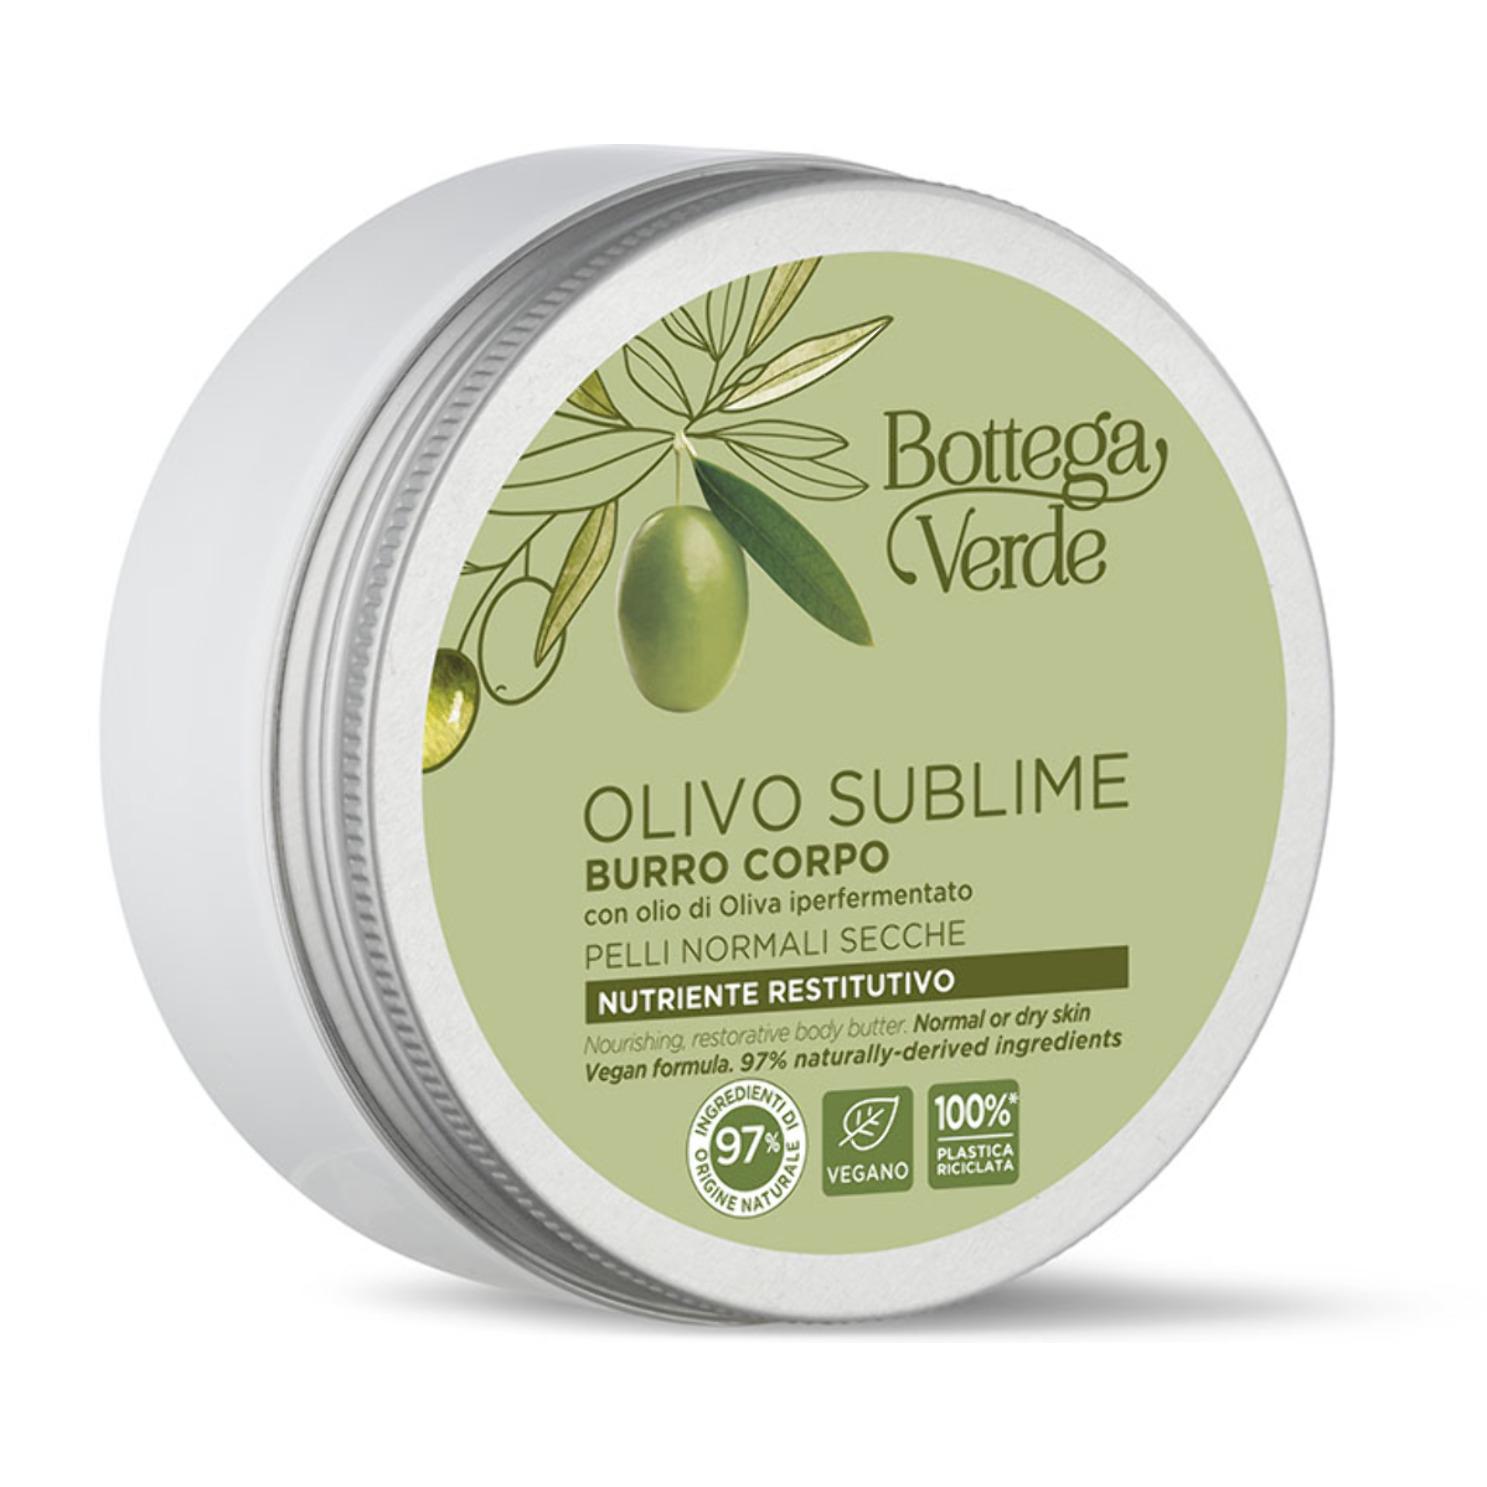 Olivo Sublime - Burro corpo - nutriente restitutivo - con olio di Oliva iperfermentato - pelli normali secche